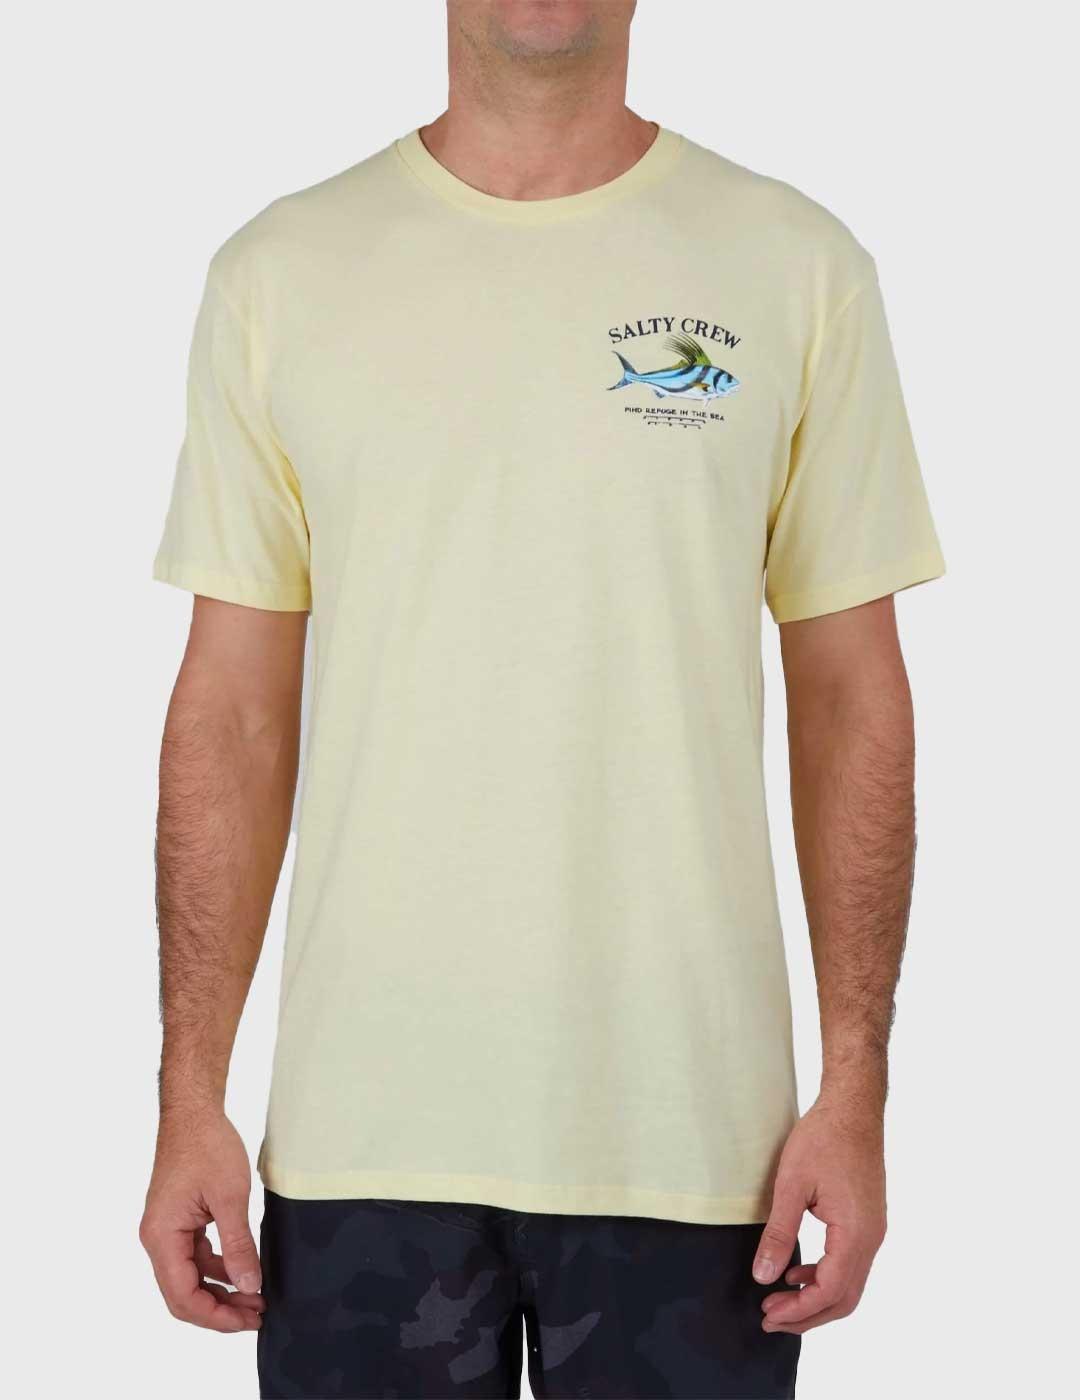 Salty Crew Rooster Premium Camiseta amarilla para hombre